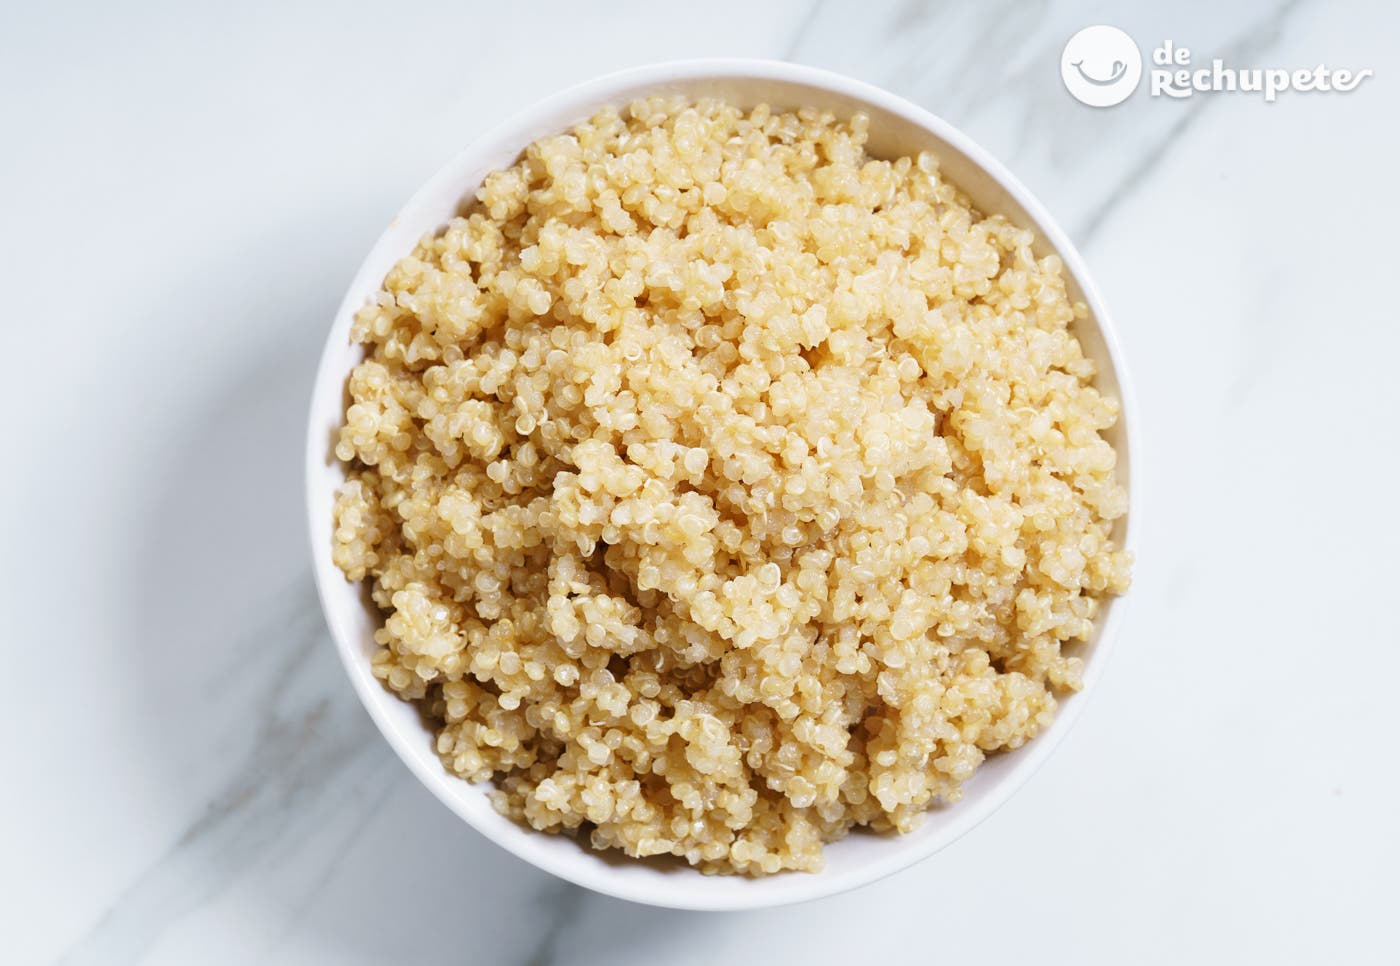 ¿Cómo hacer quinoa?